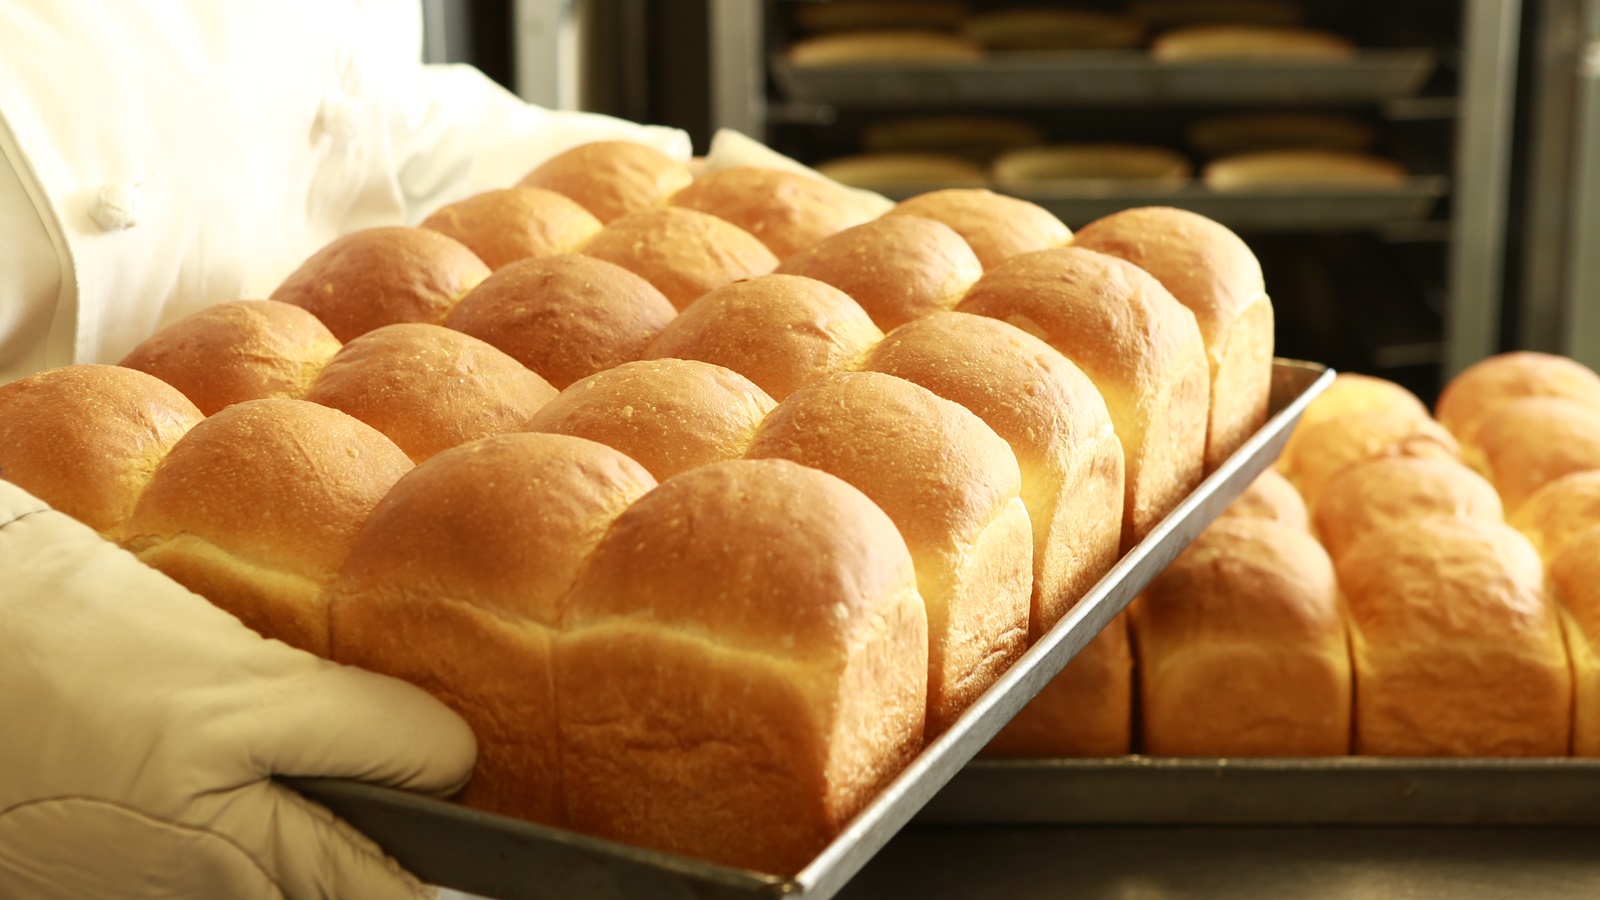 【朝食】パティシエが毎朝焼き上げるパンをお楽しみ下さい。